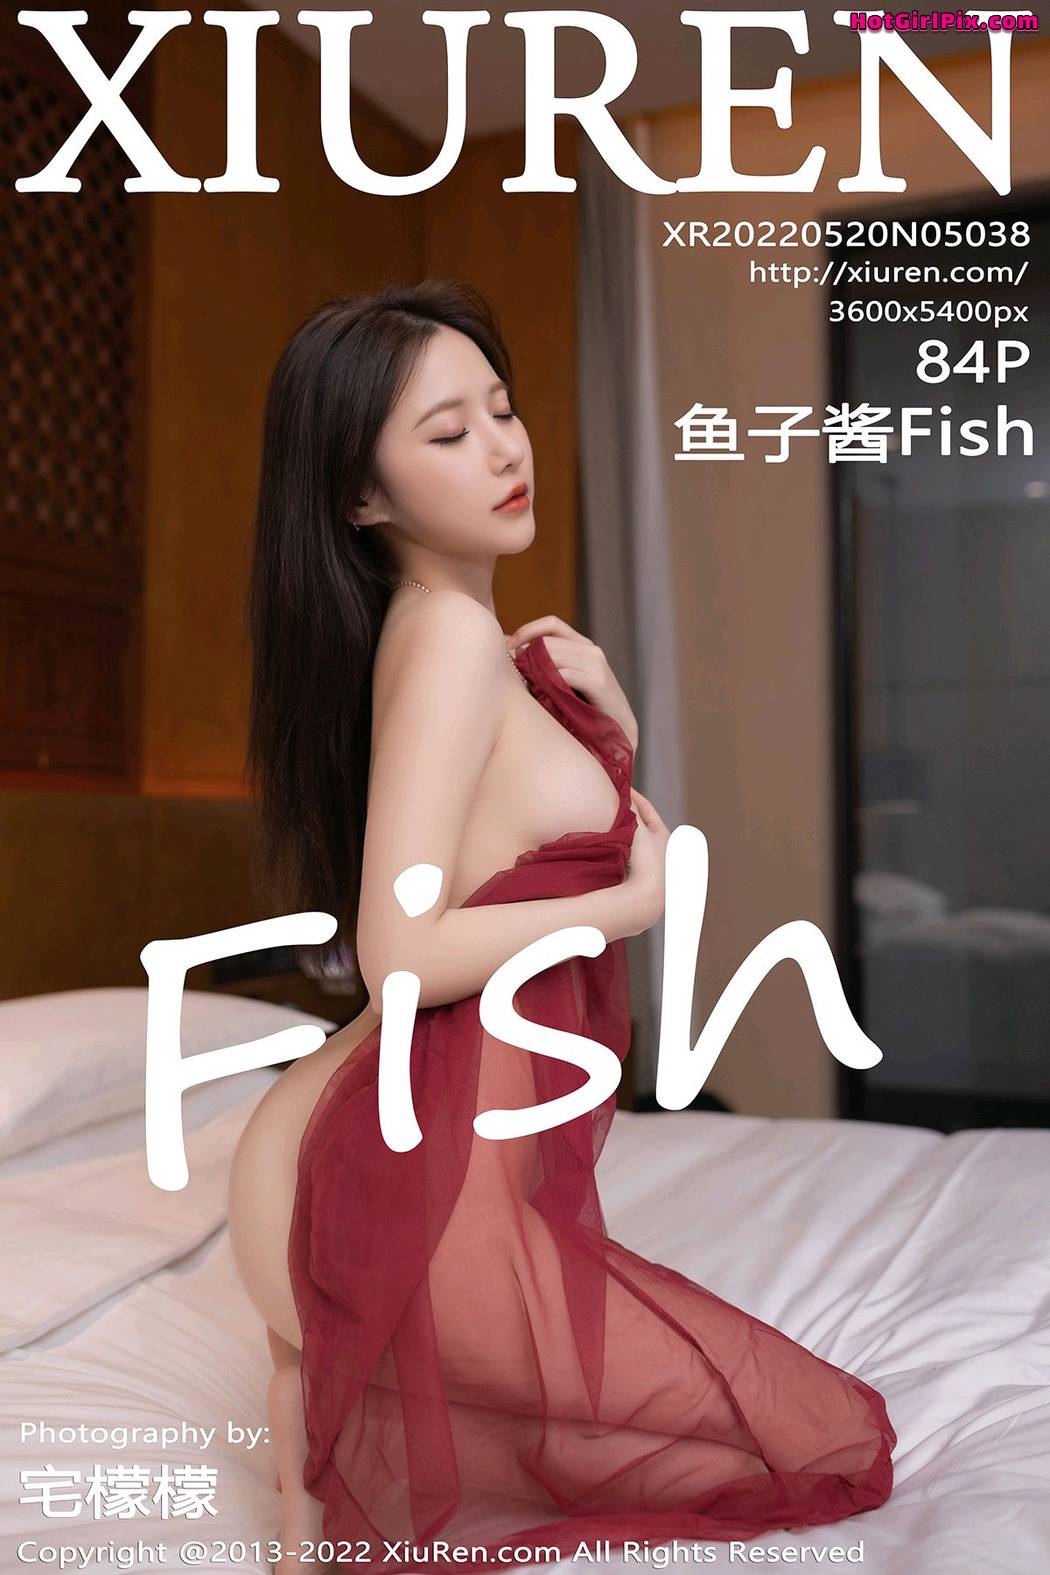 [XIUREN] No.5038 鱼子酱Fish Cover Photo